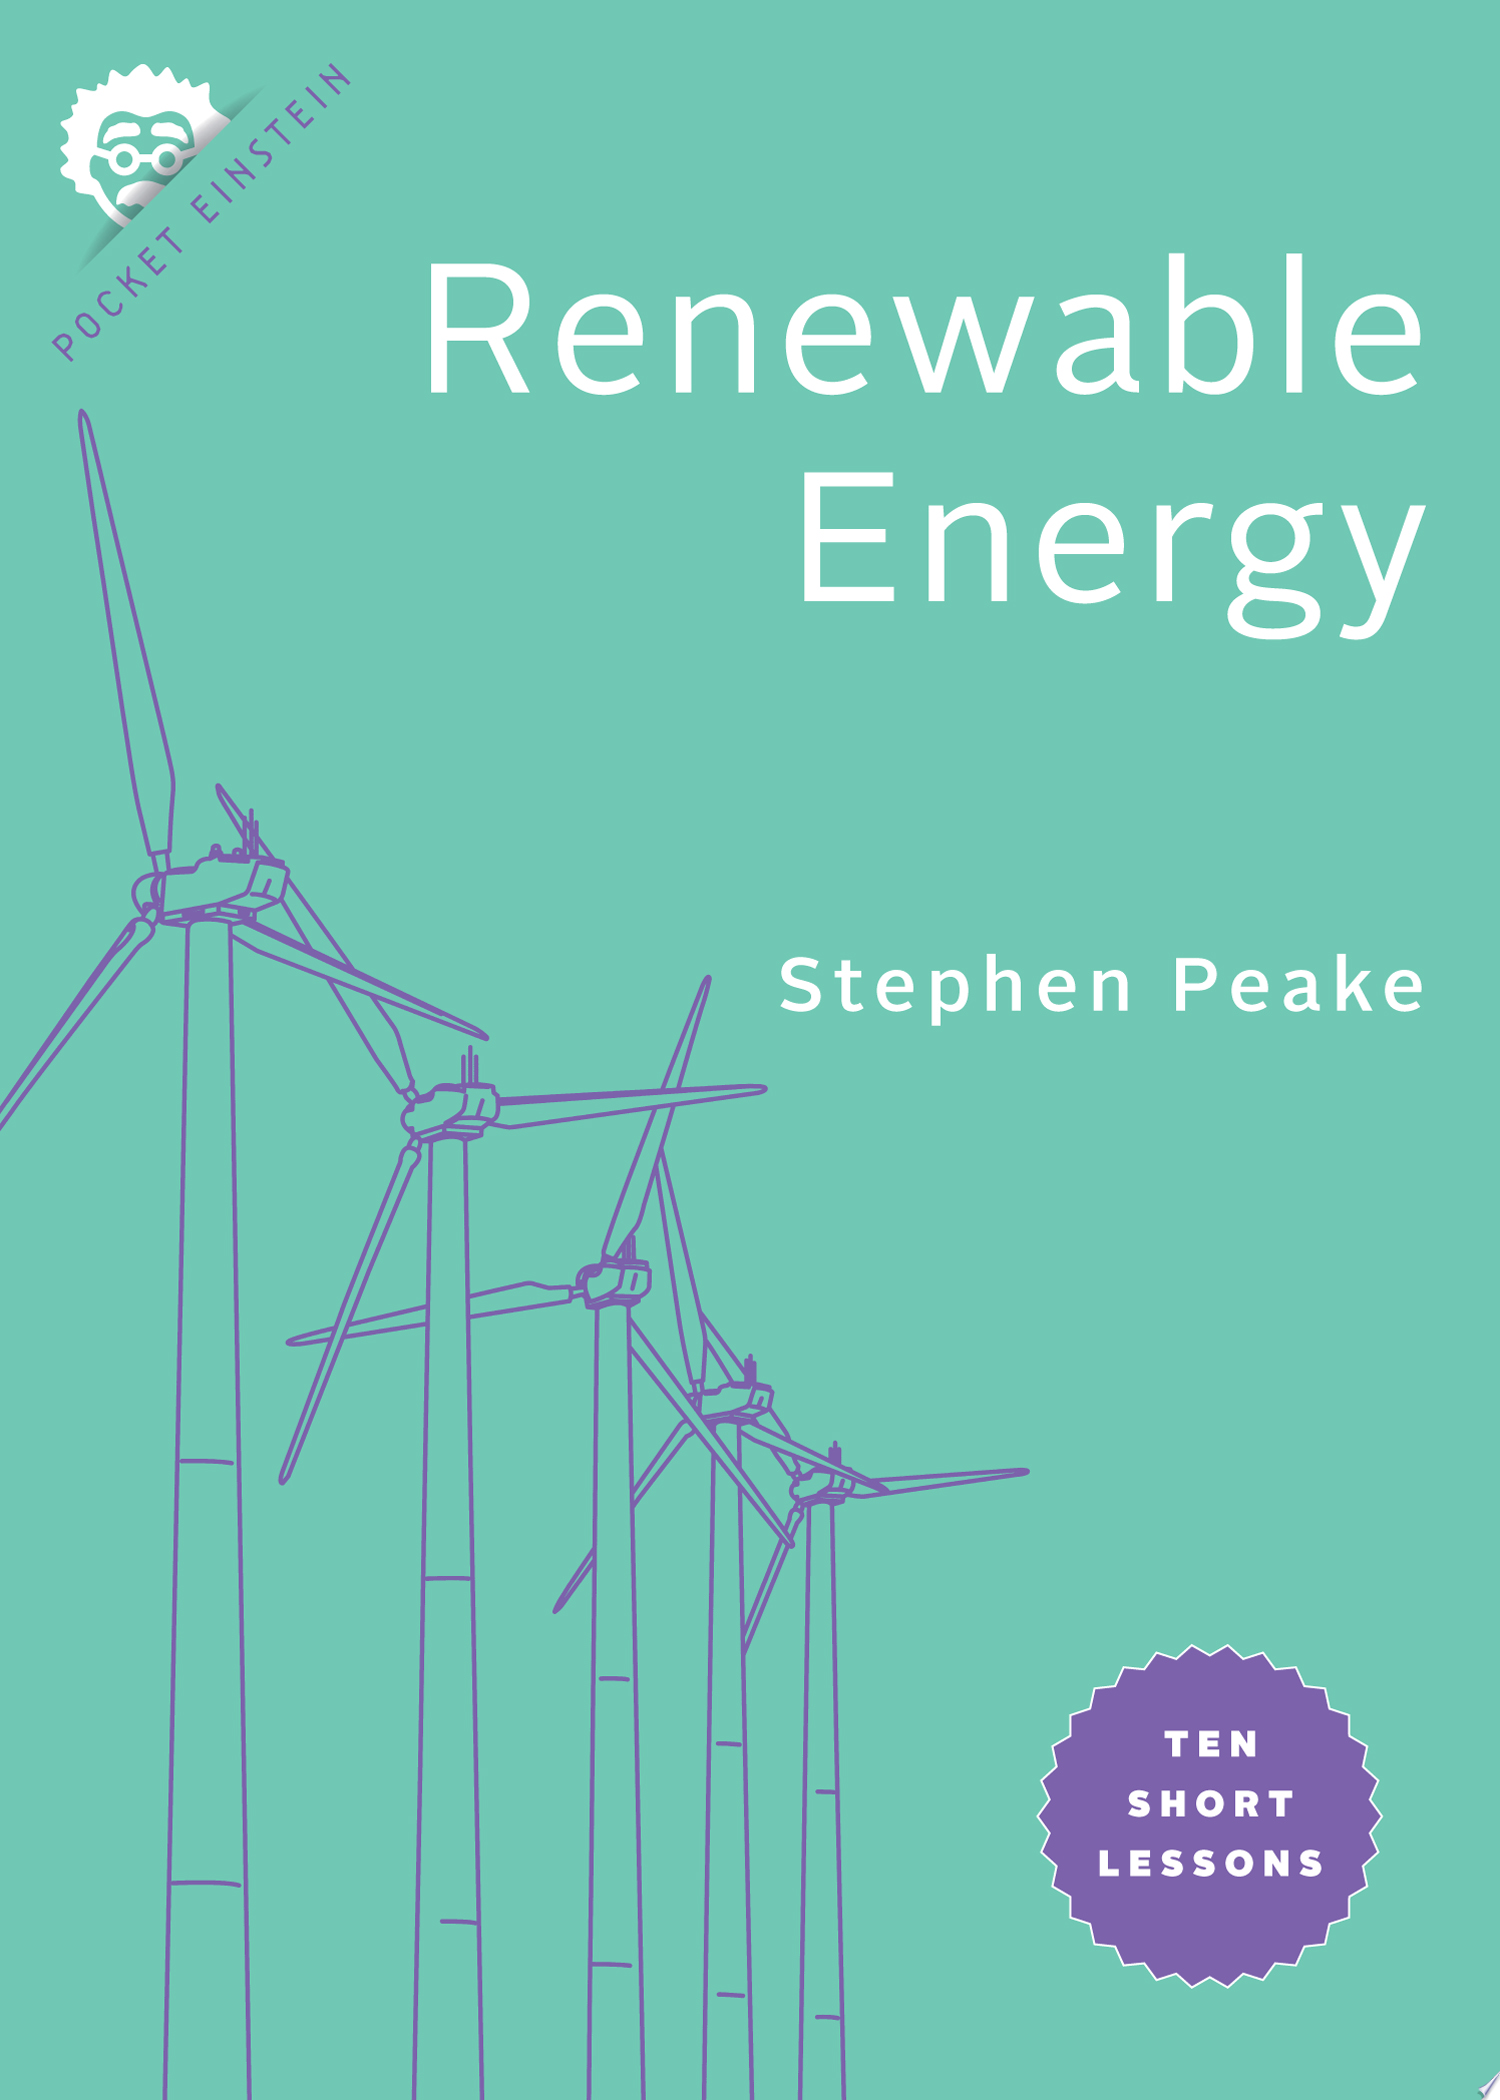 Image for "Renewable Energy"